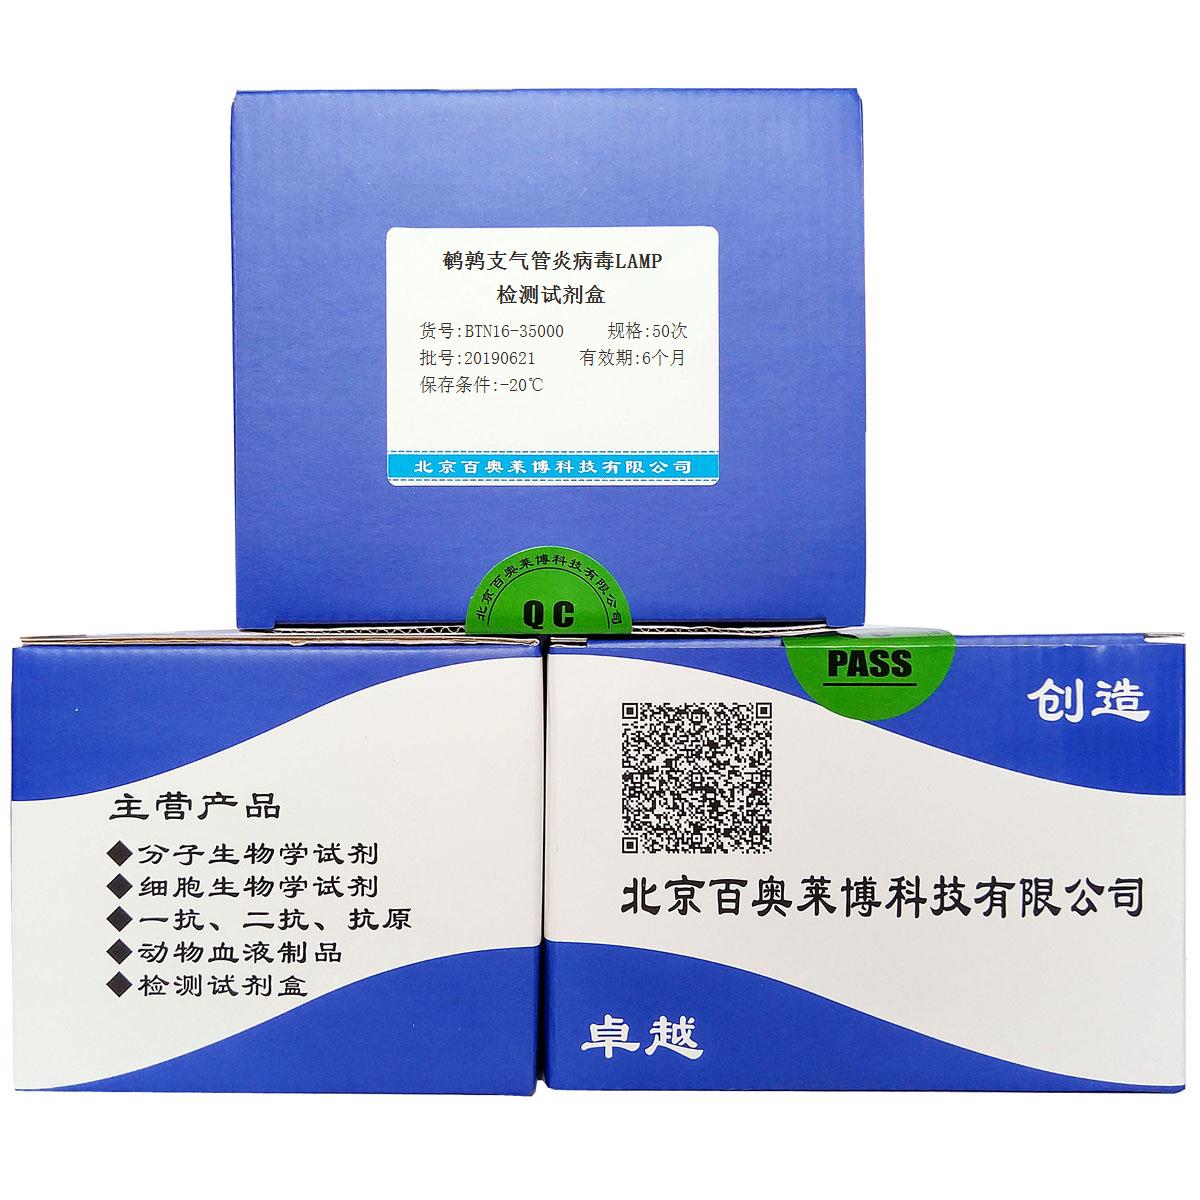 鹌鹑支气管炎病毒LAMP检测试剂盒北京品牌